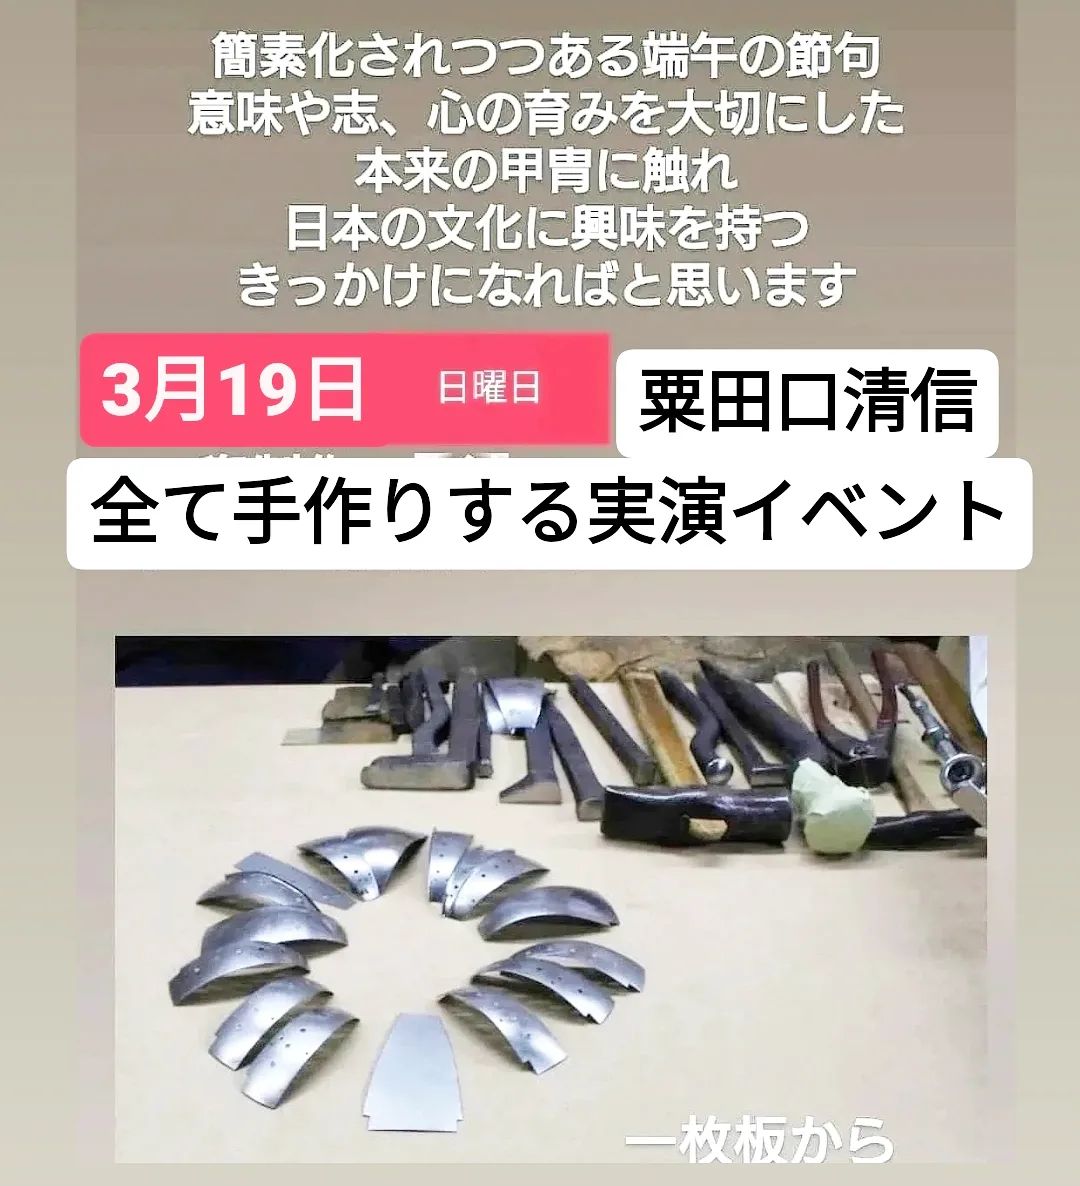 甲冑制作実演、粟田口清信- from Instagram